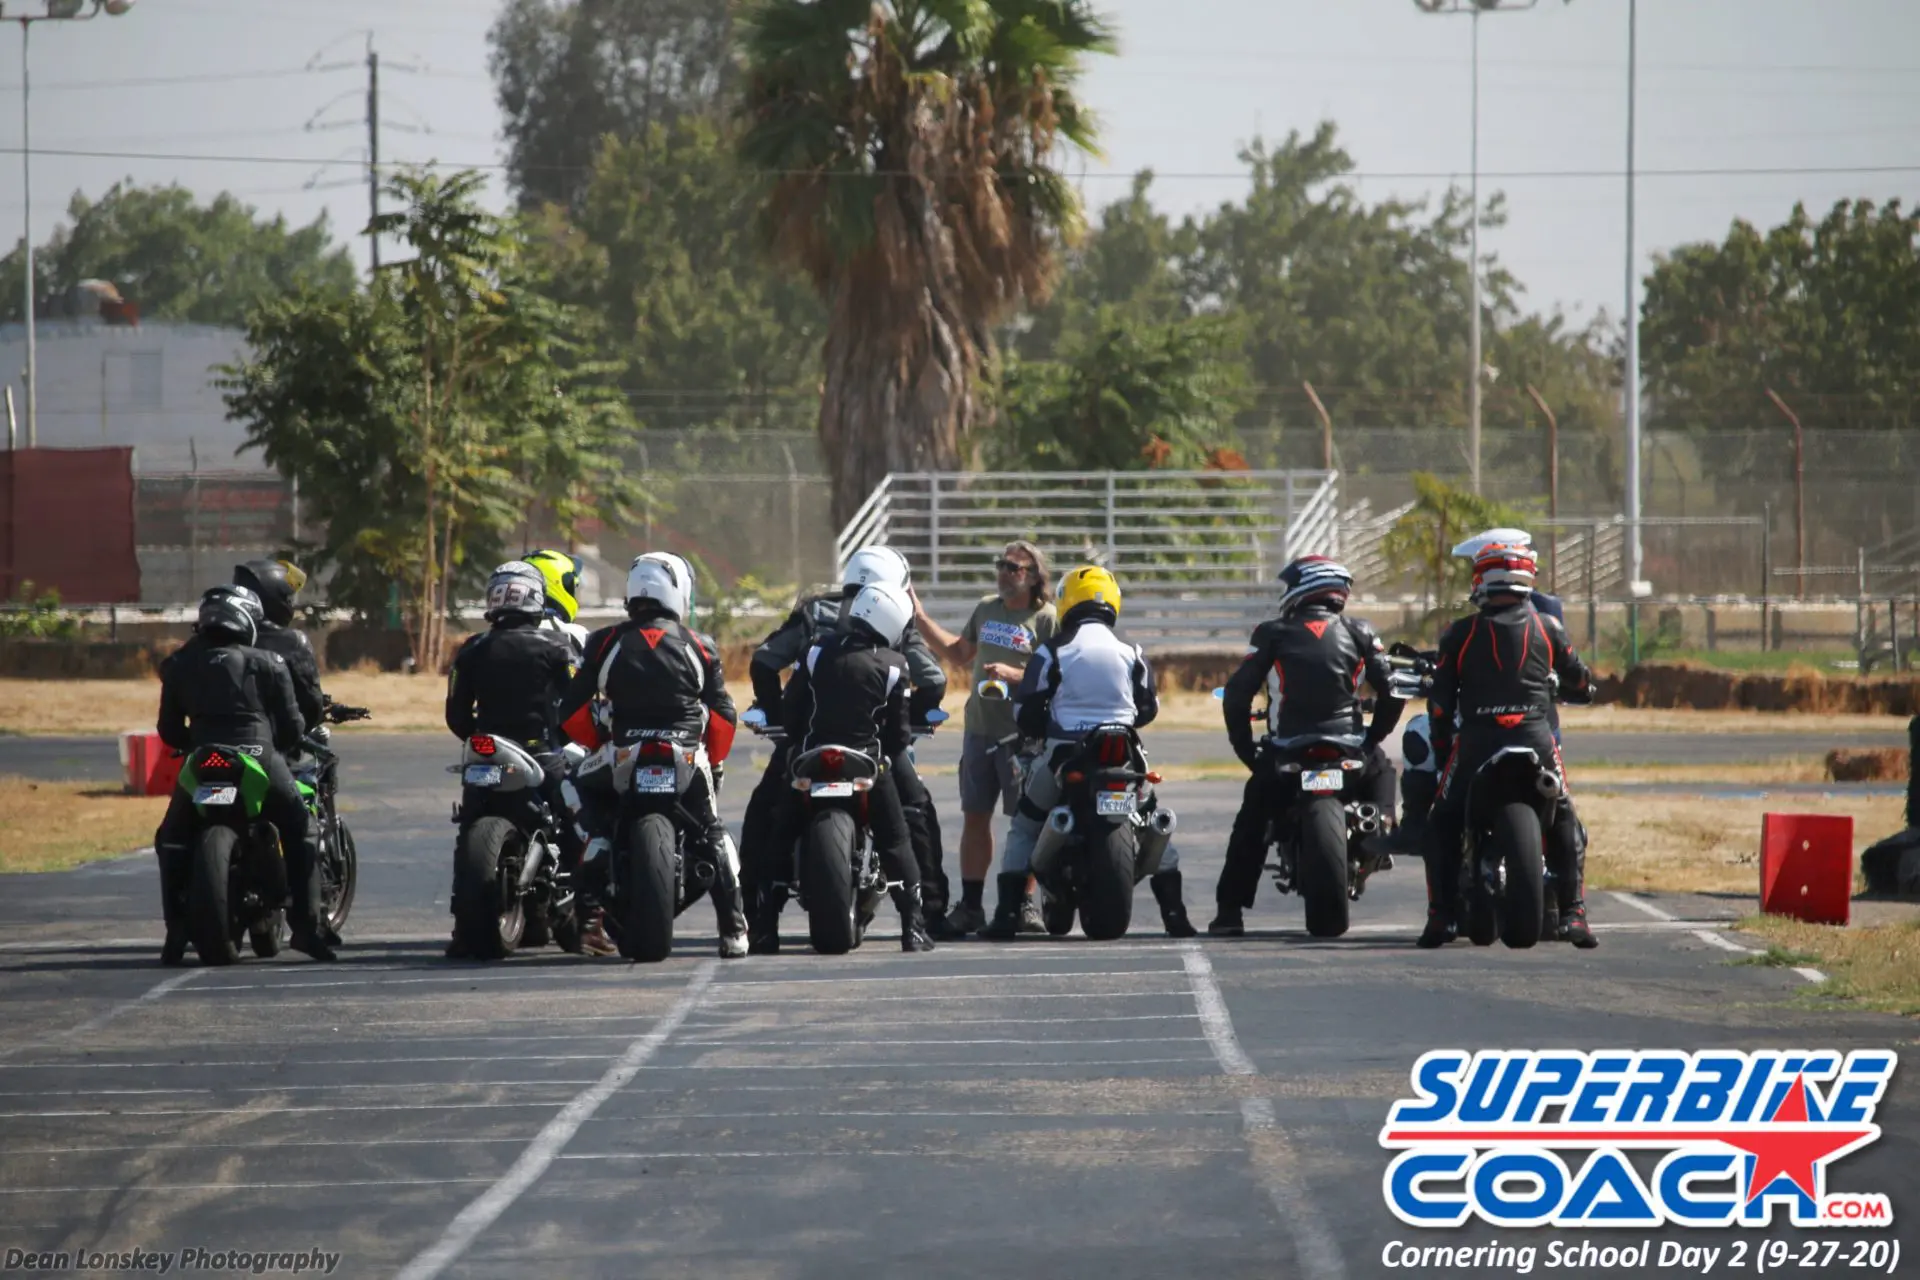 Advanced Moto Riding Courses